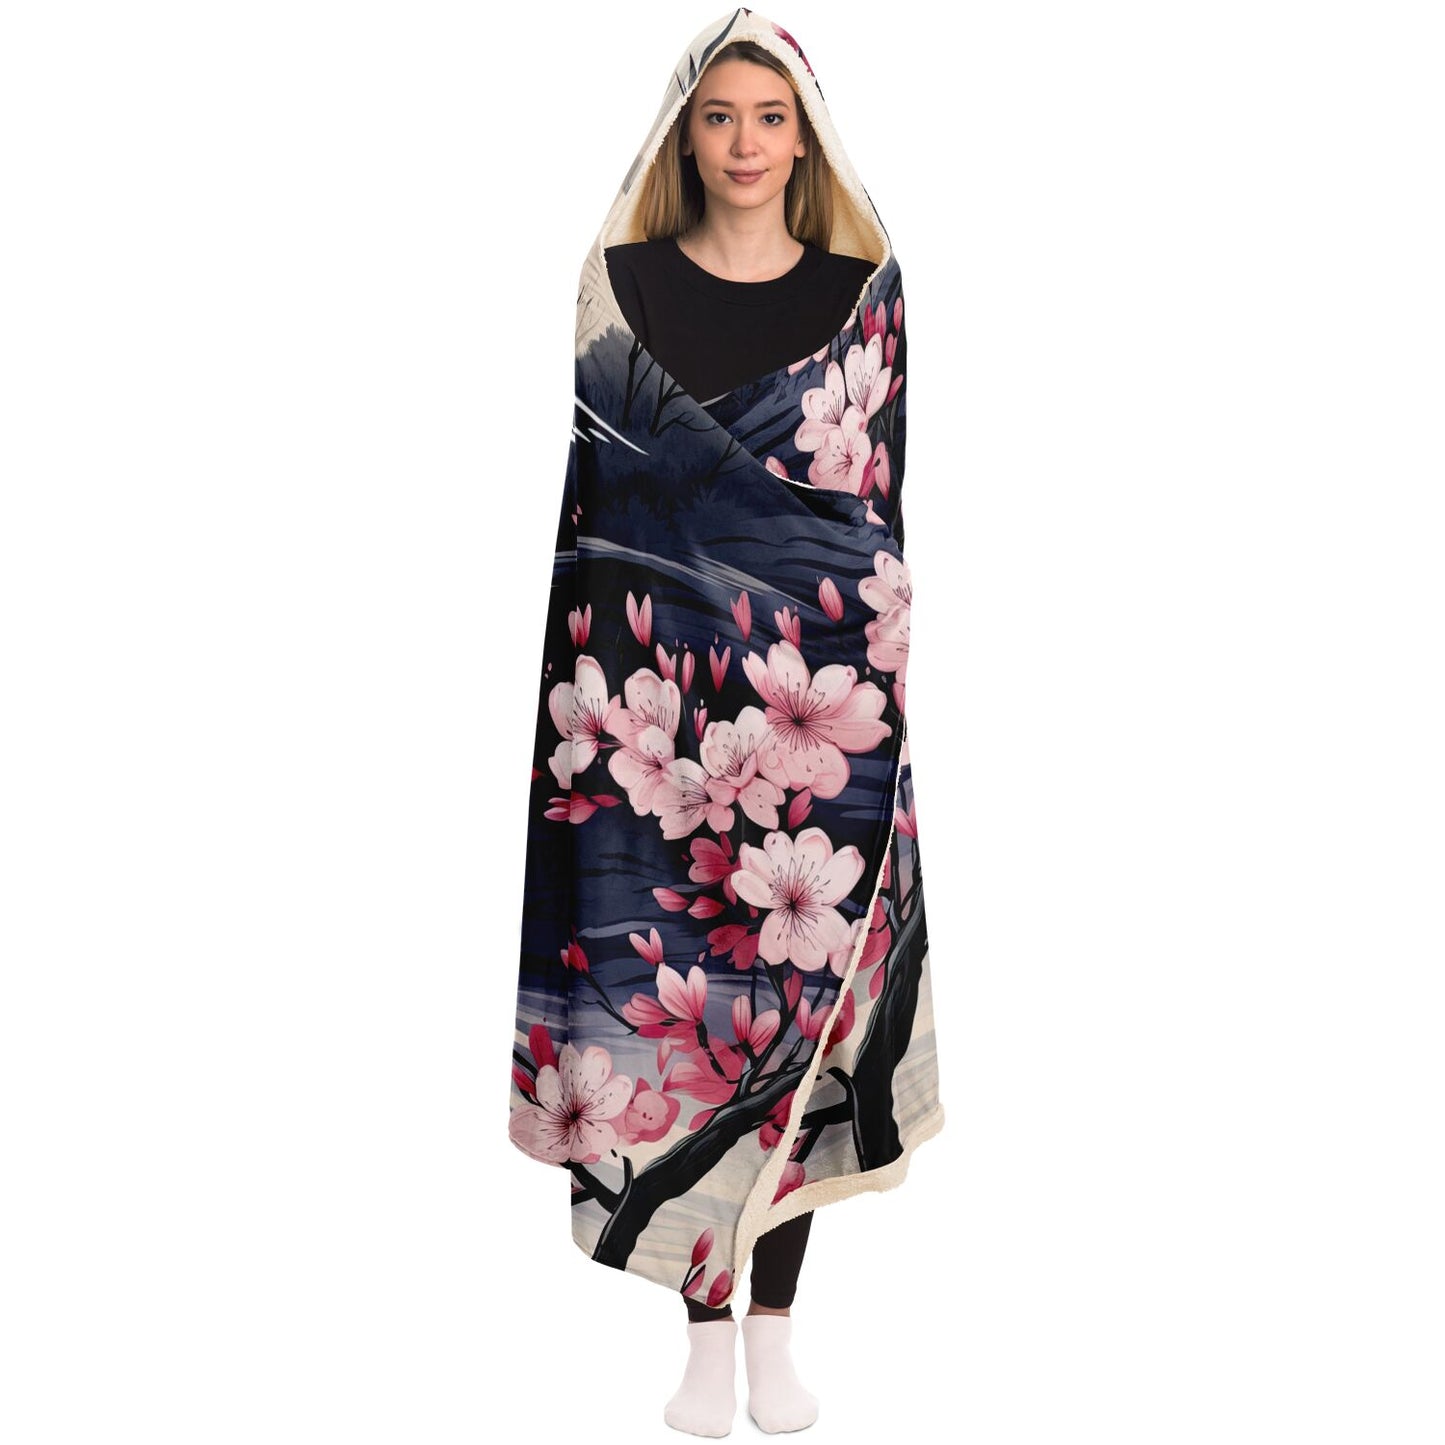 Kozy Komfort Hooded Cherry Blossom Blanket